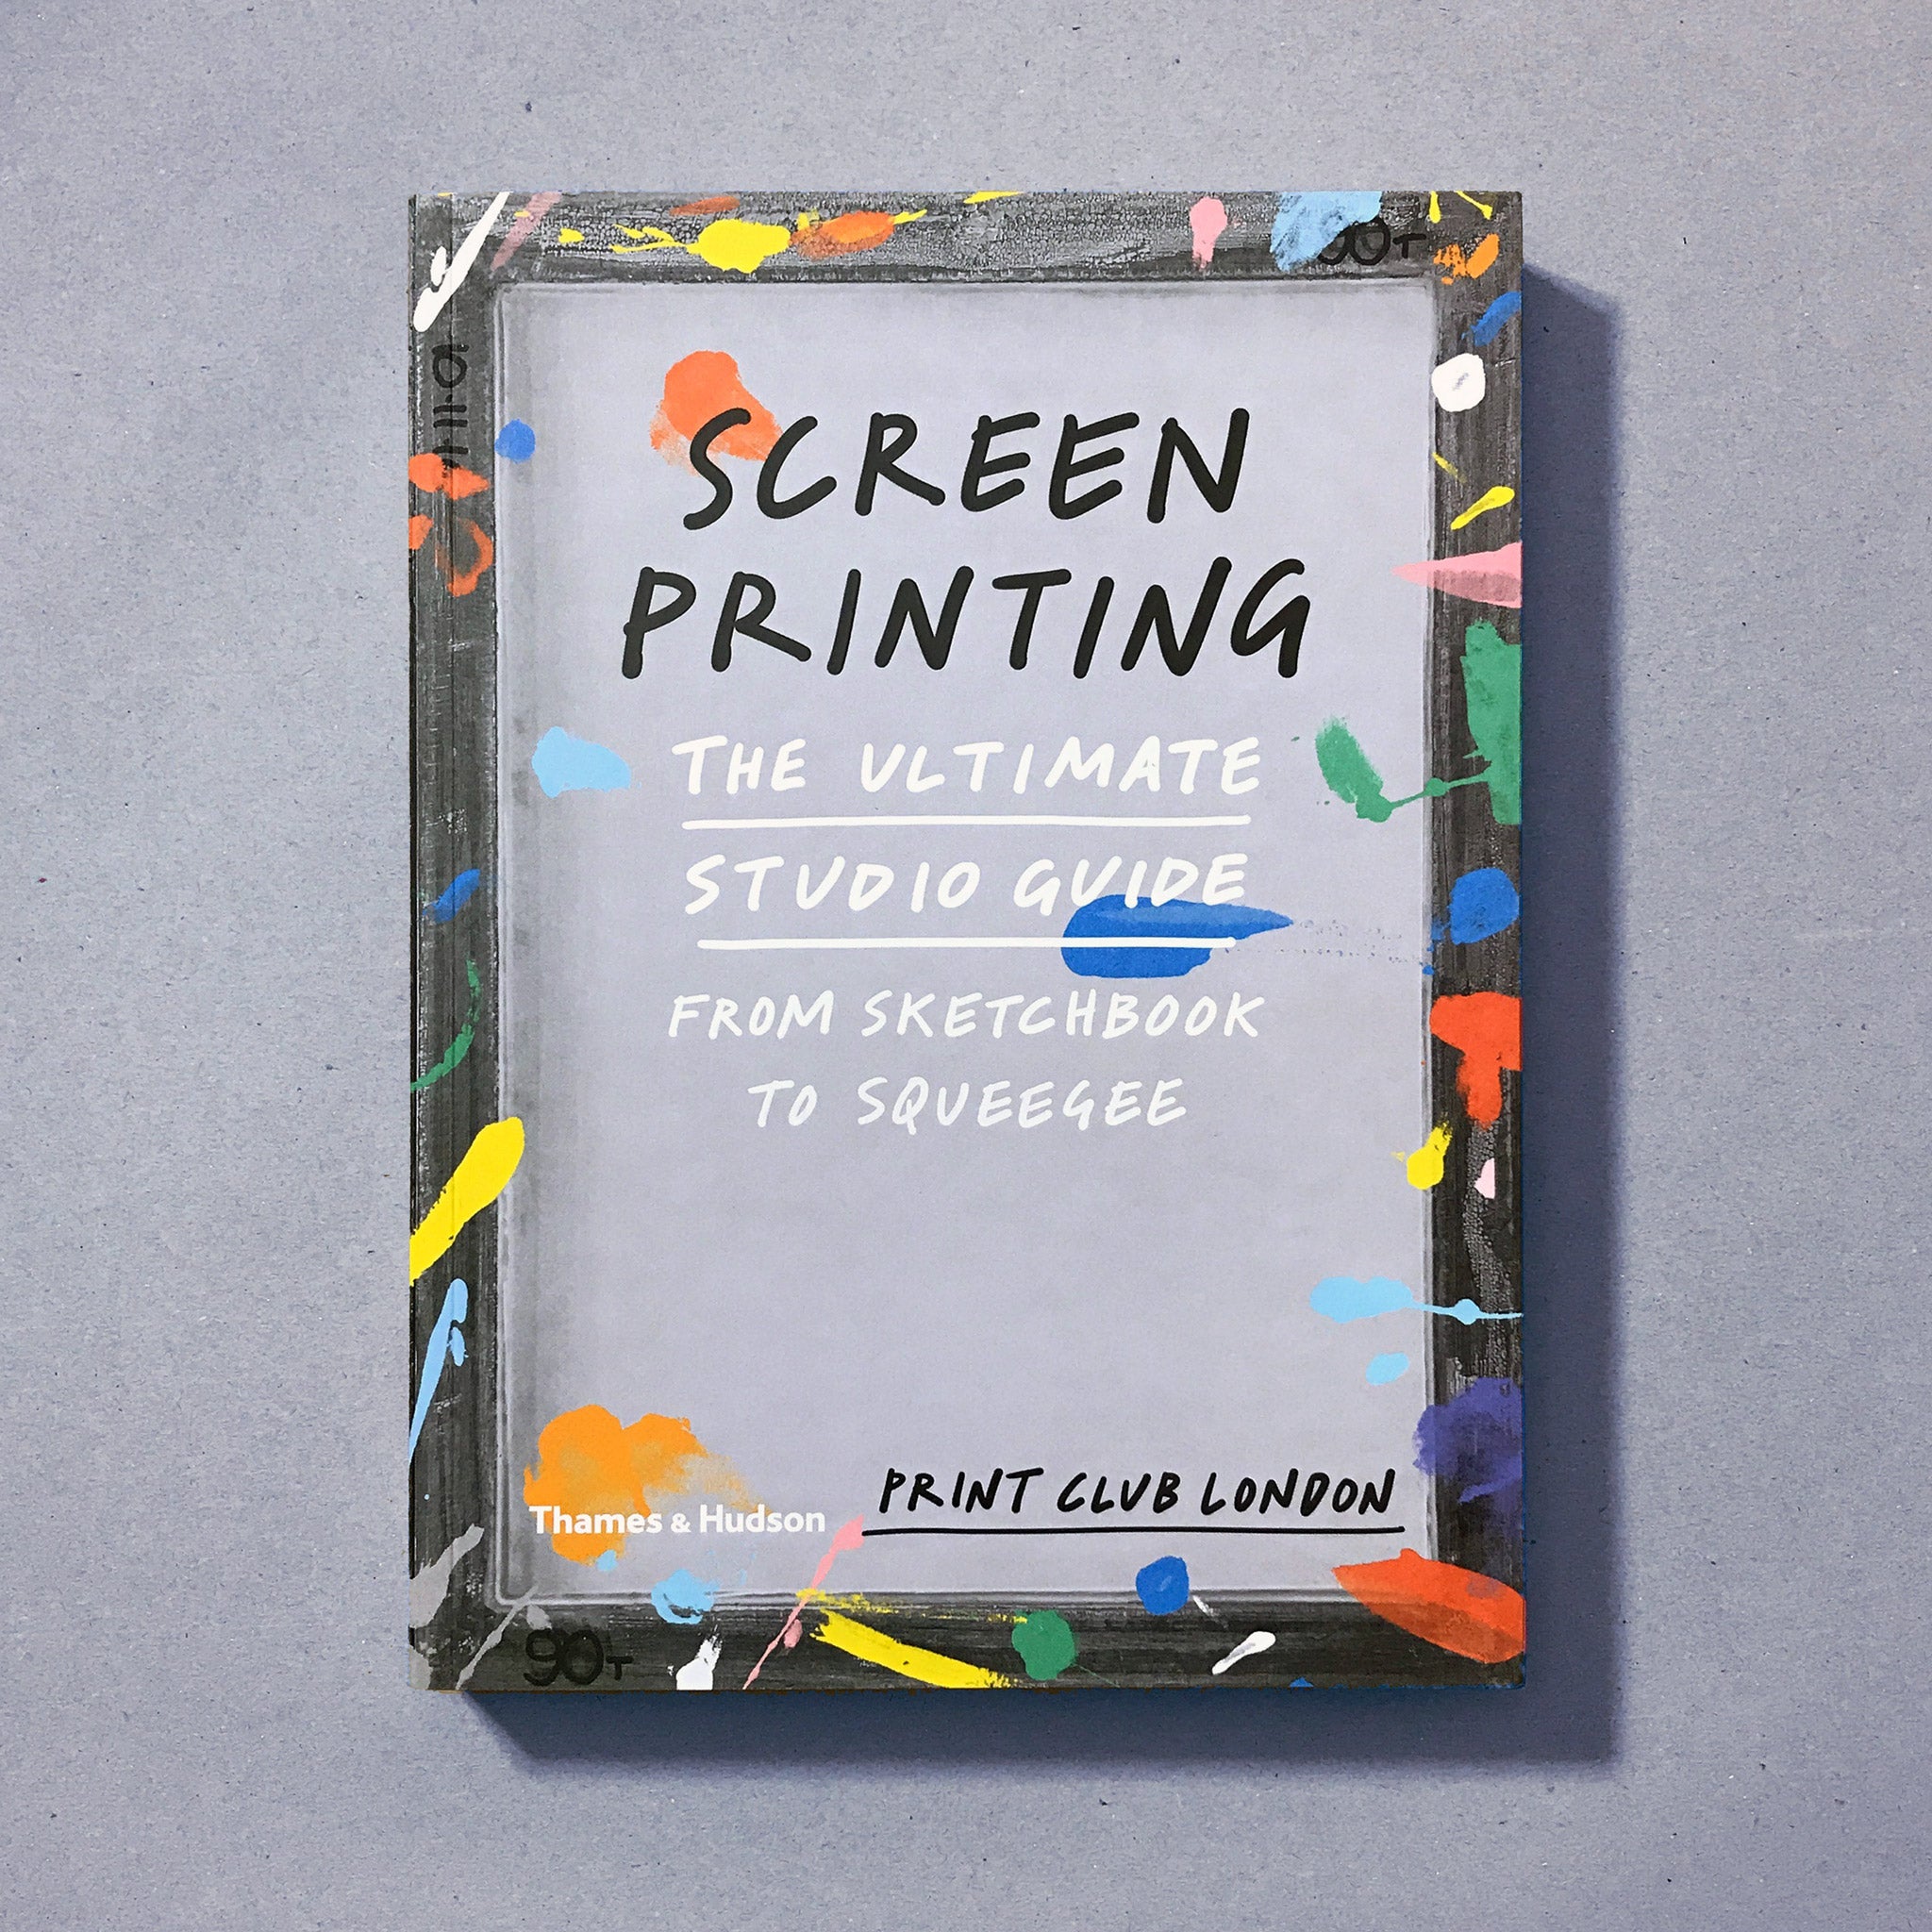 Screenprinting The Ultimate Studio Guide